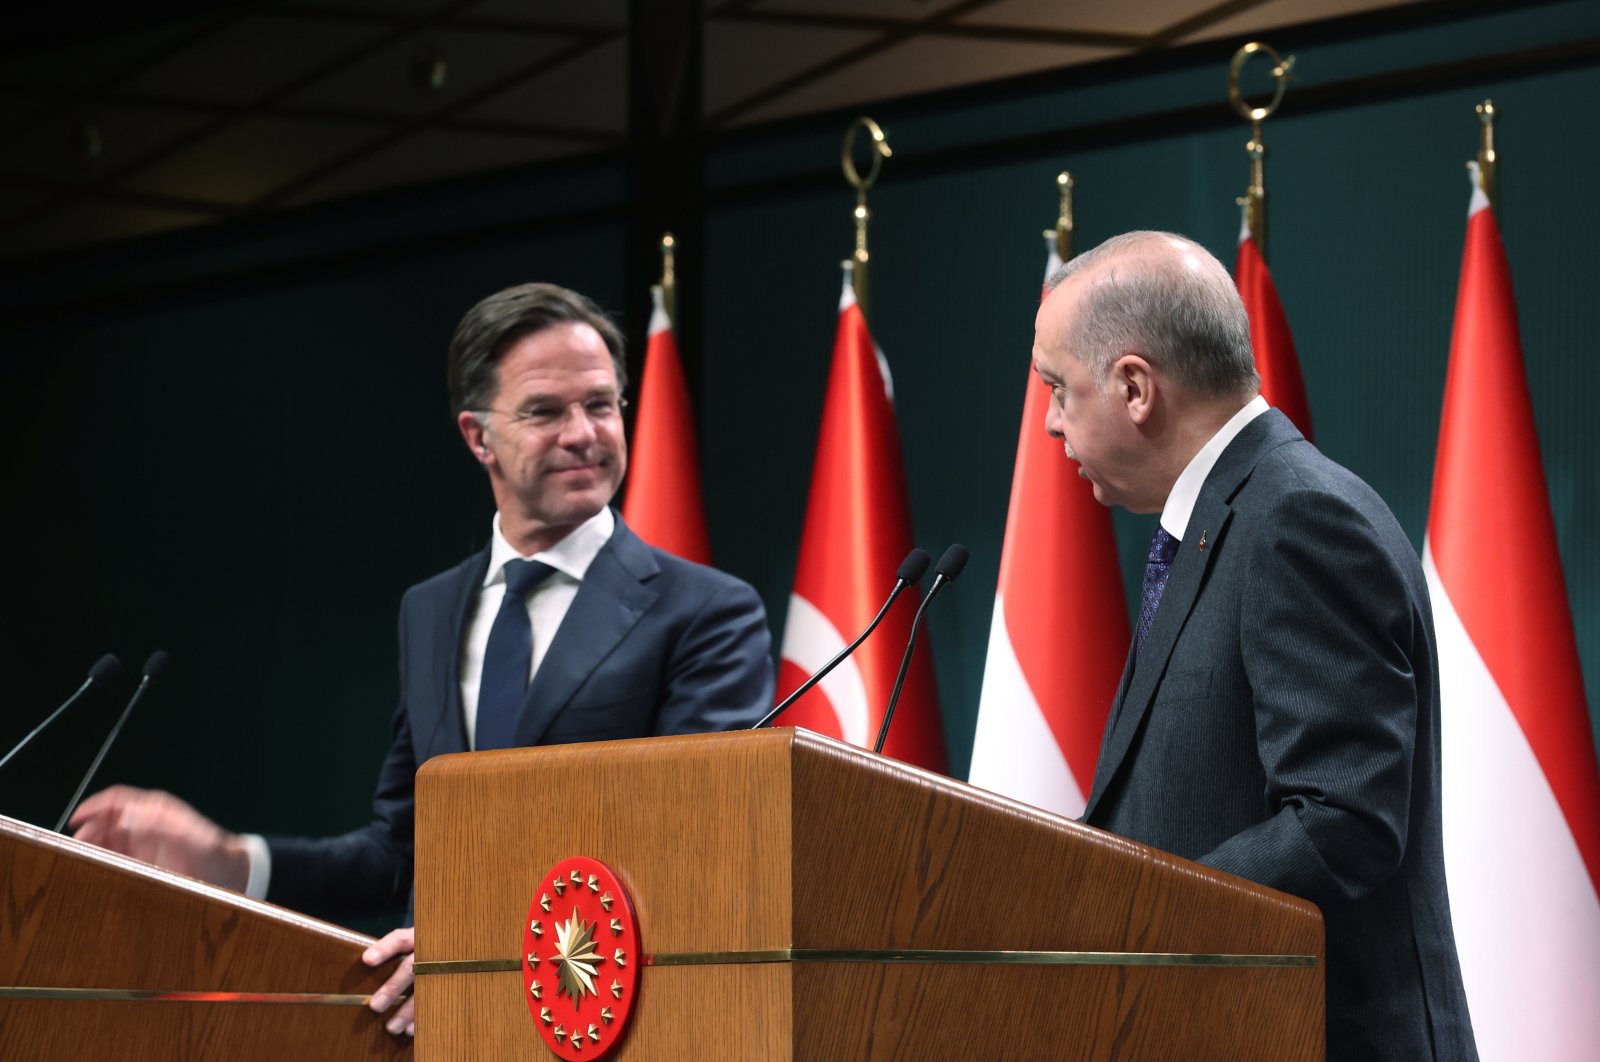 Serikat Pabean akan menjadi prioritas dalam pembicaraan Turki-Uni Eropa: PM Belanda Rutte